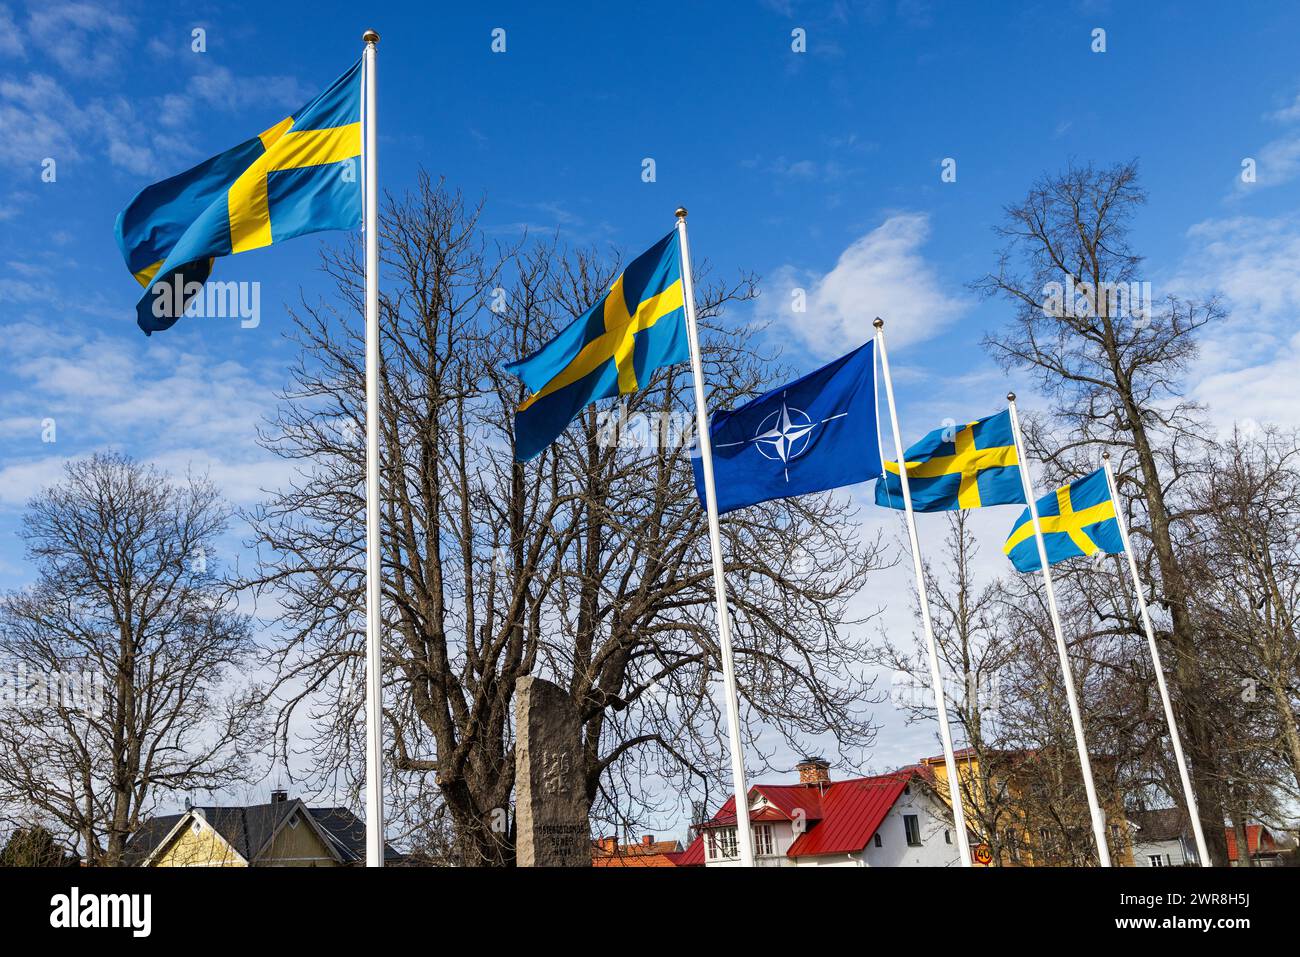 Après ratification par les parlements de tous les pays membres, la Suède est aujourd'hui l'un des 32 membres de l'alliance militaire de l'OTAN. Lundi, une cérémonie a eu lieu à la base aérienne de Malmen, 'Linköpings garnison', pour marquer l'entrée de la Suède dans l'OTAN. Pour la première fois depuis 1814, la Suède fait partie d'une alliance militaire. Banque D'Images